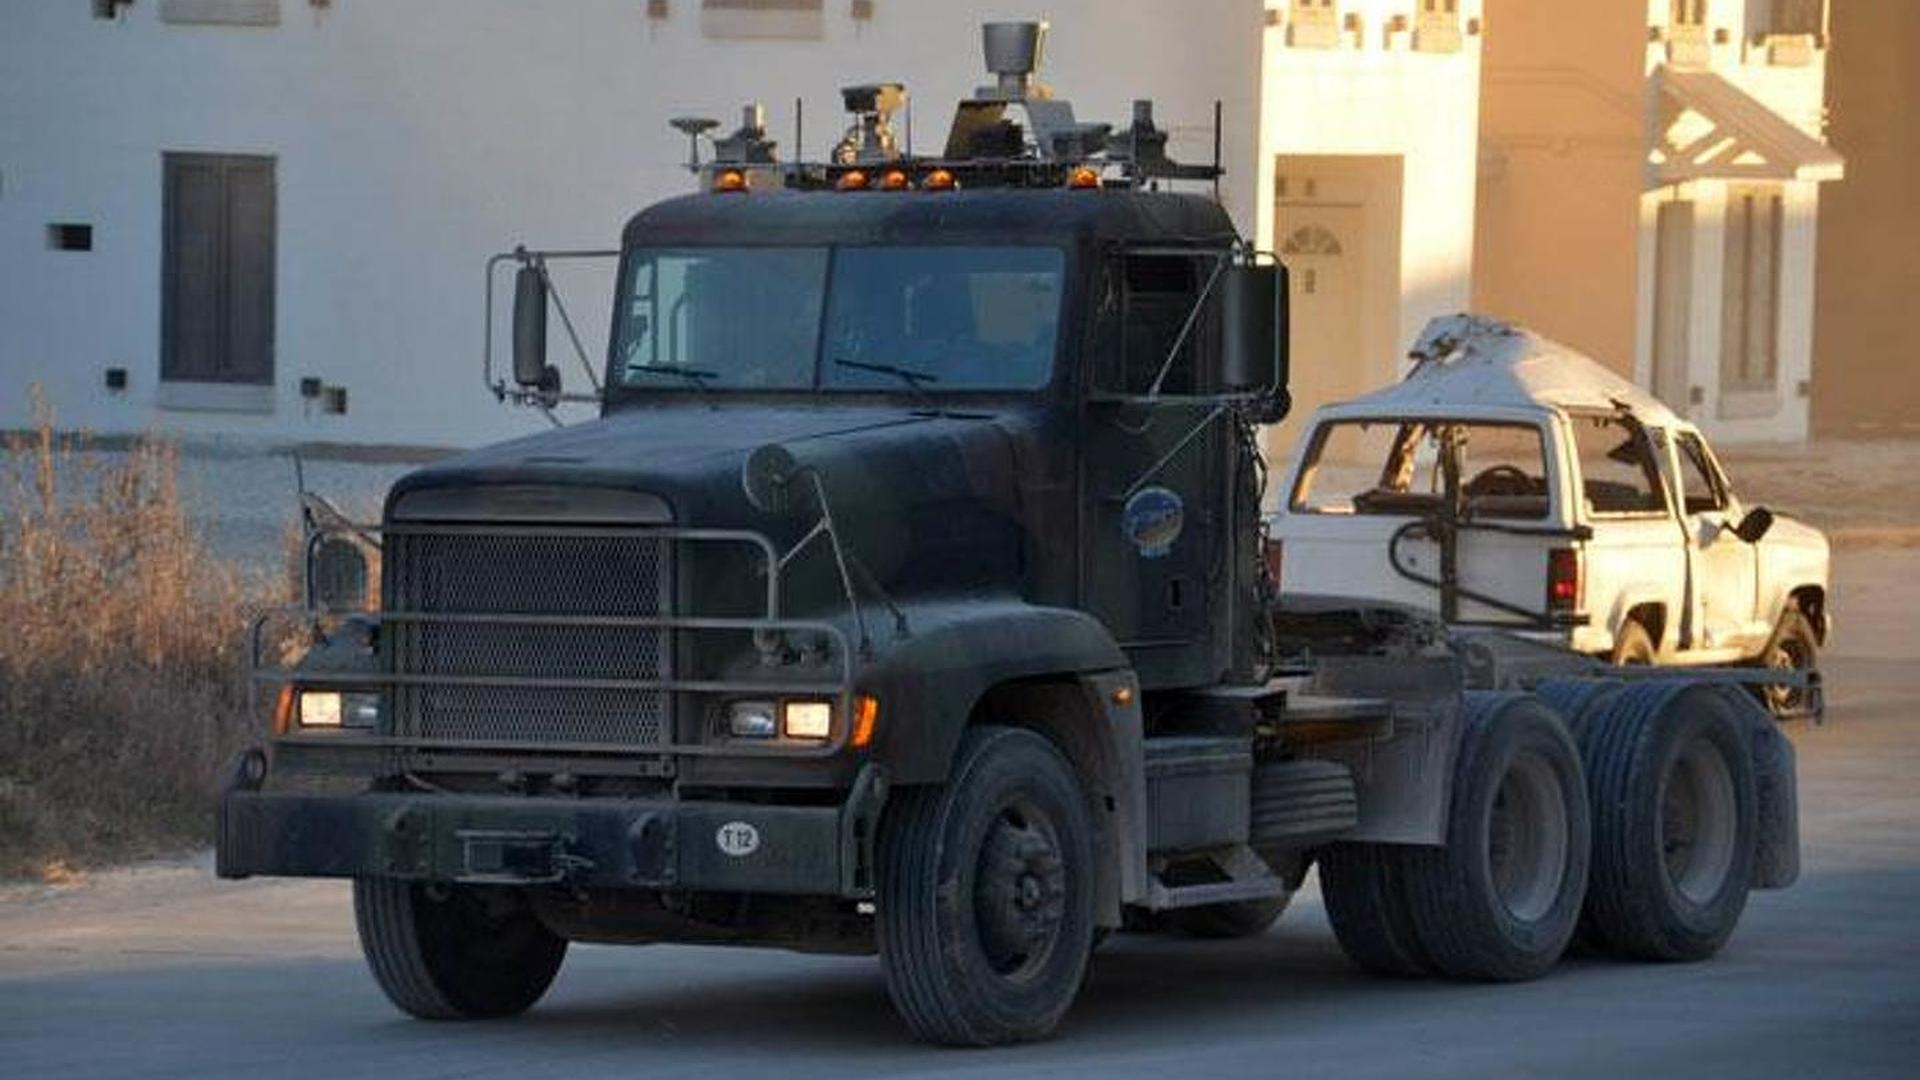 Autonomous Military Truck Escort Trial Run In Texas Looks Quite